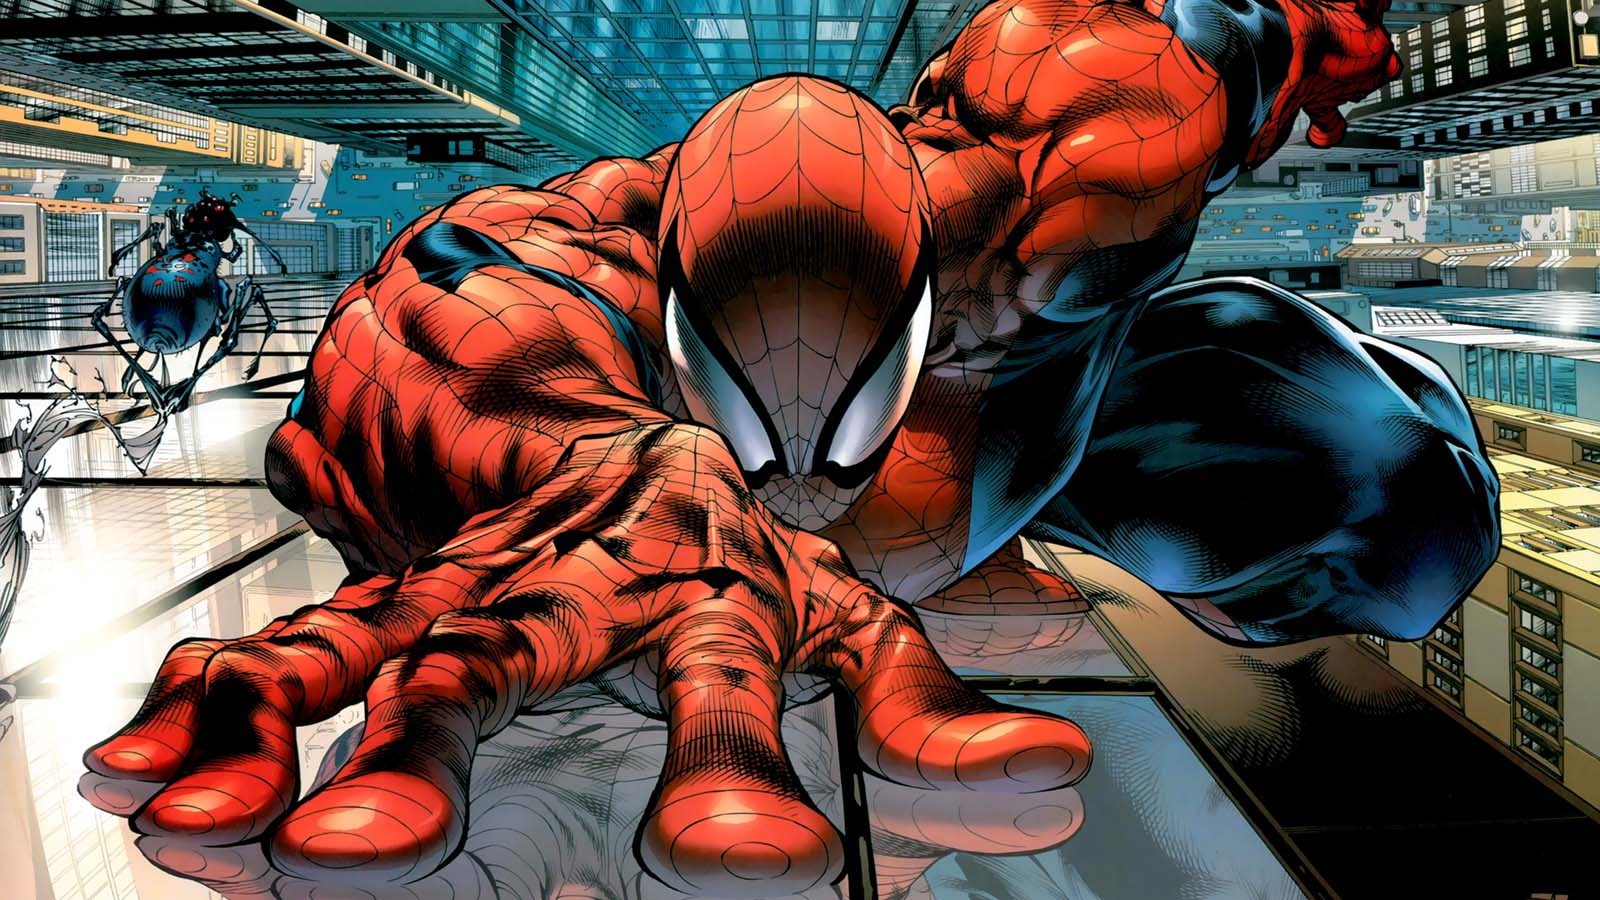 fond d'écran marvel comics hd,homme araignée,super héros,personnage fictif,des bandes dessinées,fiction